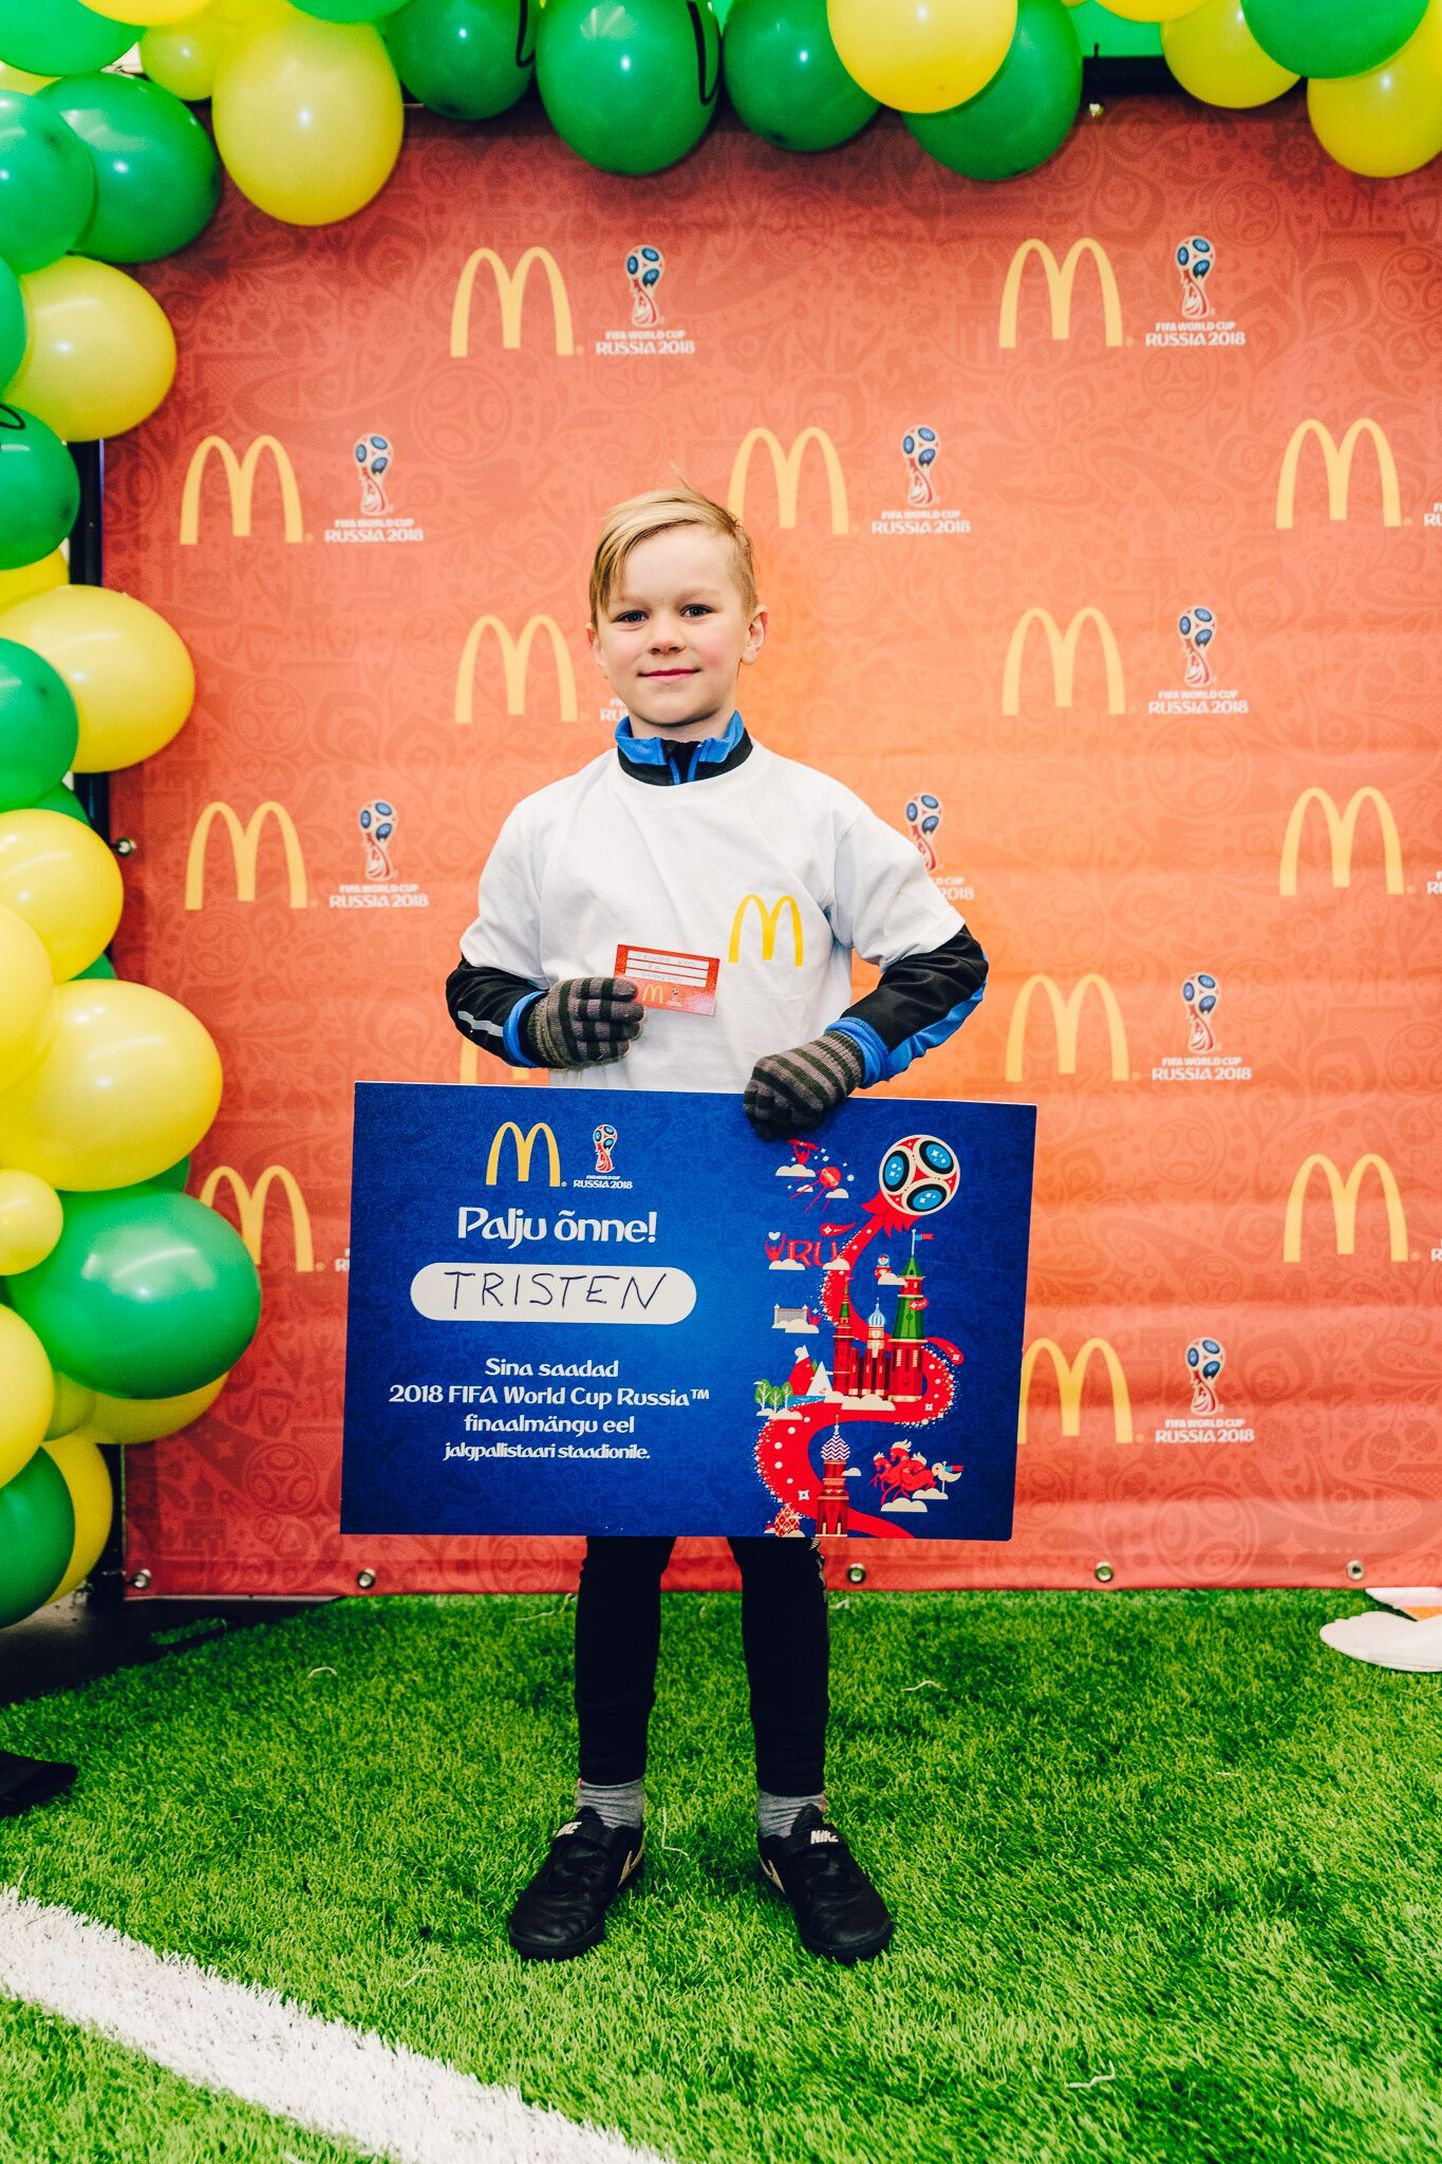 8-aastane Tristen Kool saab võimaluse sõita Moskvasse jalgpalli MM-ile ning saata ühe jalgpalluri palliplatsile.